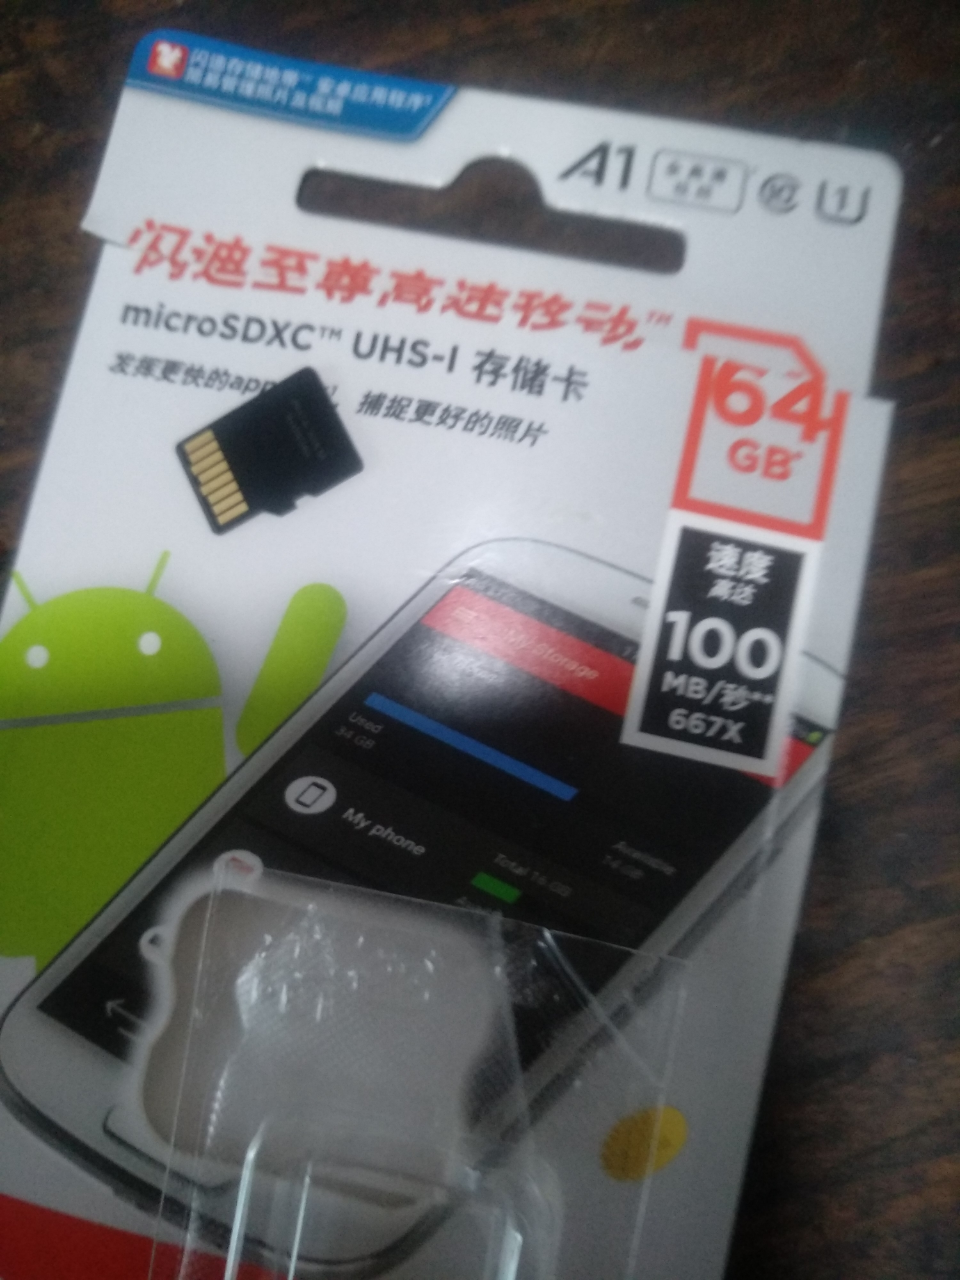 闪迪(SanDisk)A1 手机内存卡64G 读速140M/s 高速移动MicroSDHC UHS-I存储卡 TF卡晒单图